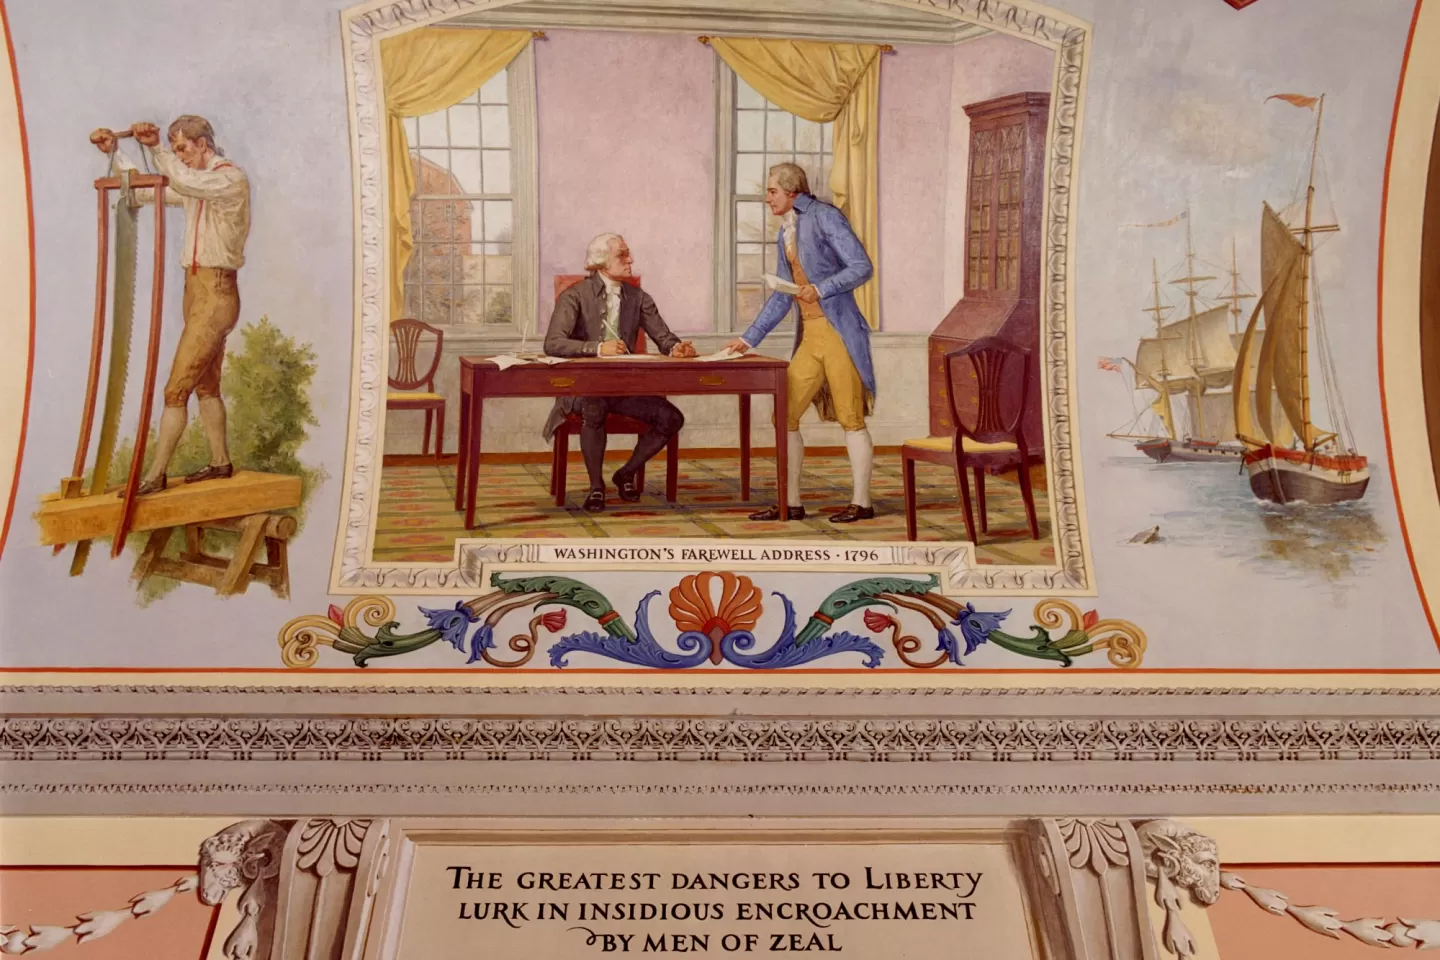 "Washington's Farewell Address, 1796" by Allyn Cox